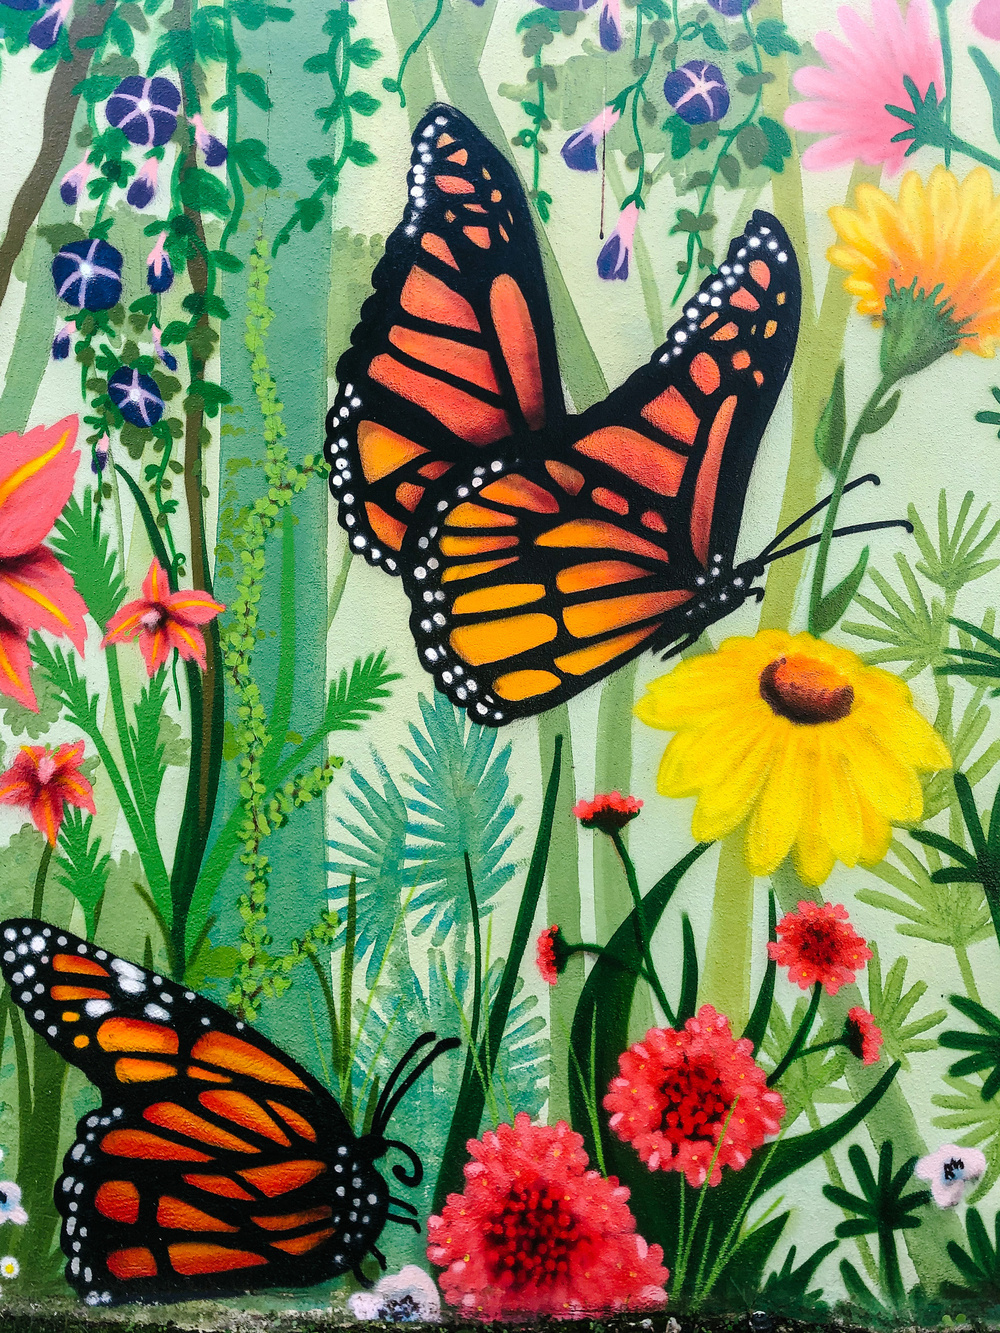 a street art piece, flowers and butterflies